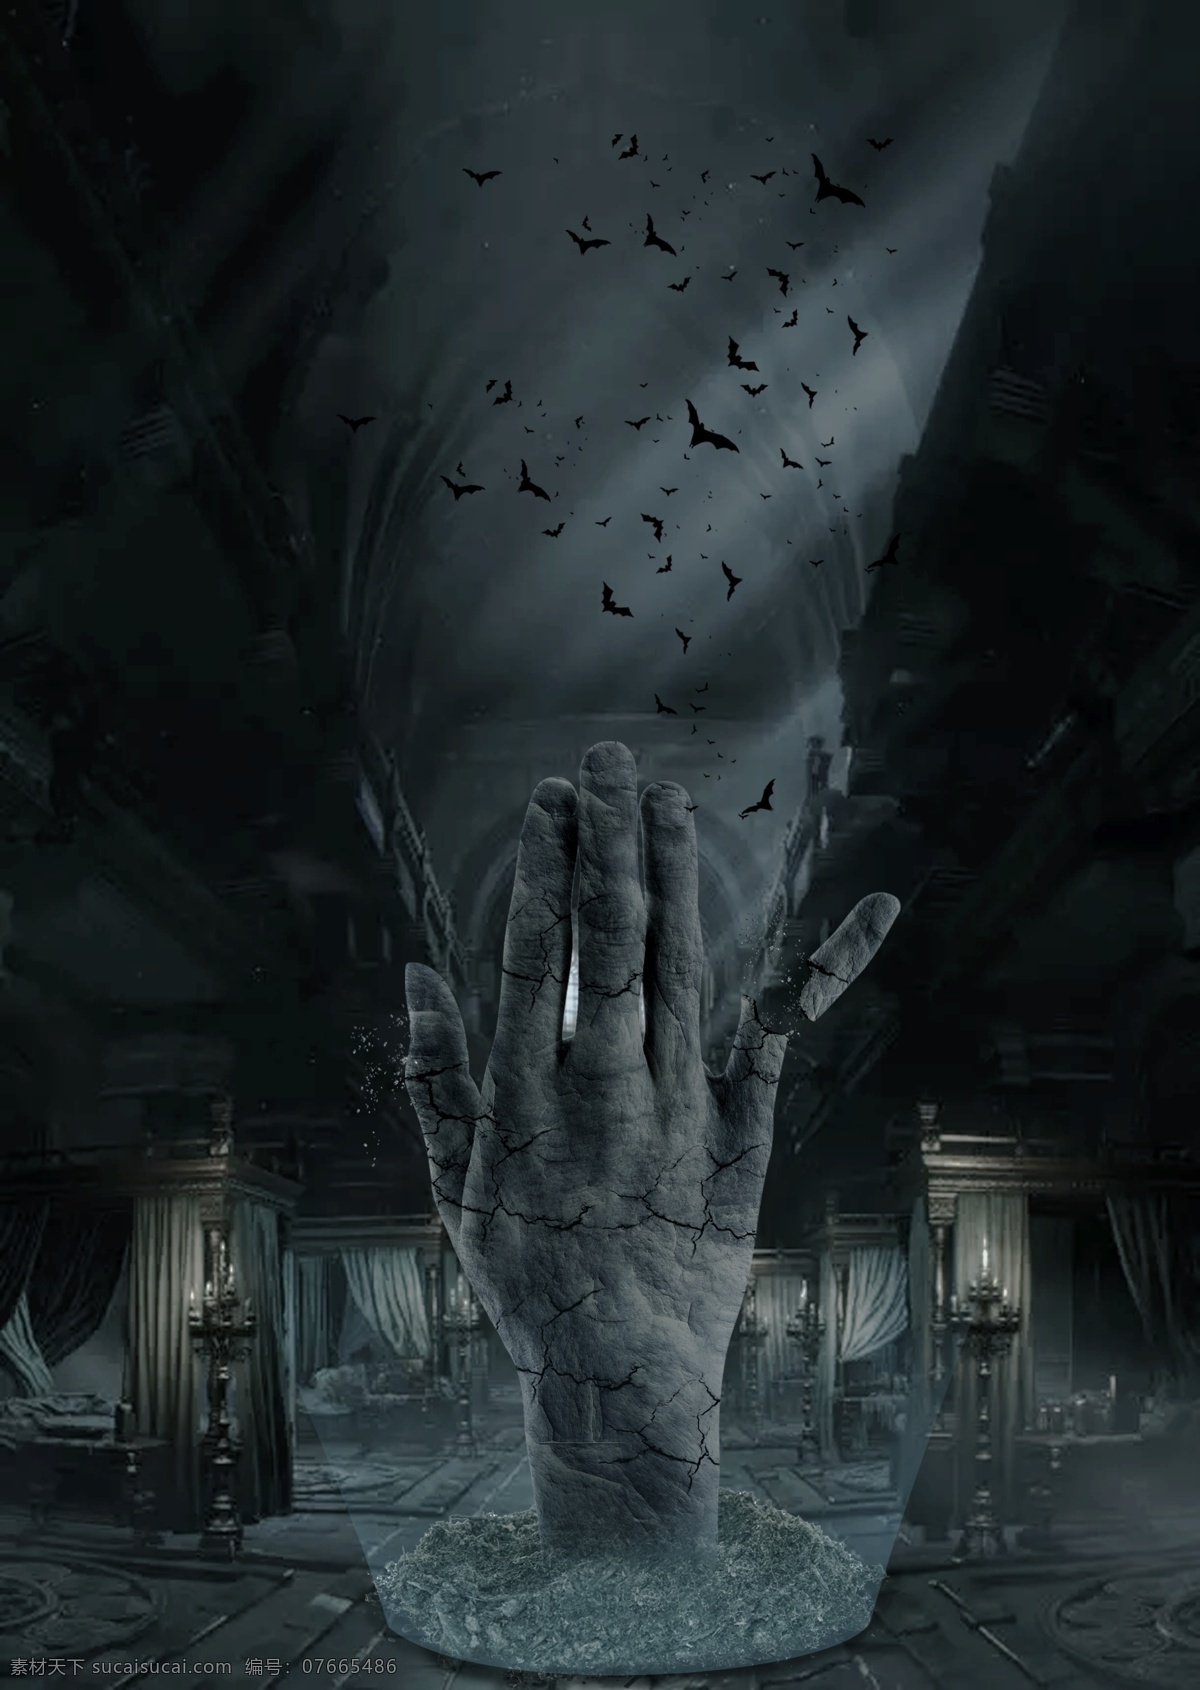 幽灵之手 手掌 恐怖 阴暗 万圣节 鬼海报 电影素材 合成海报